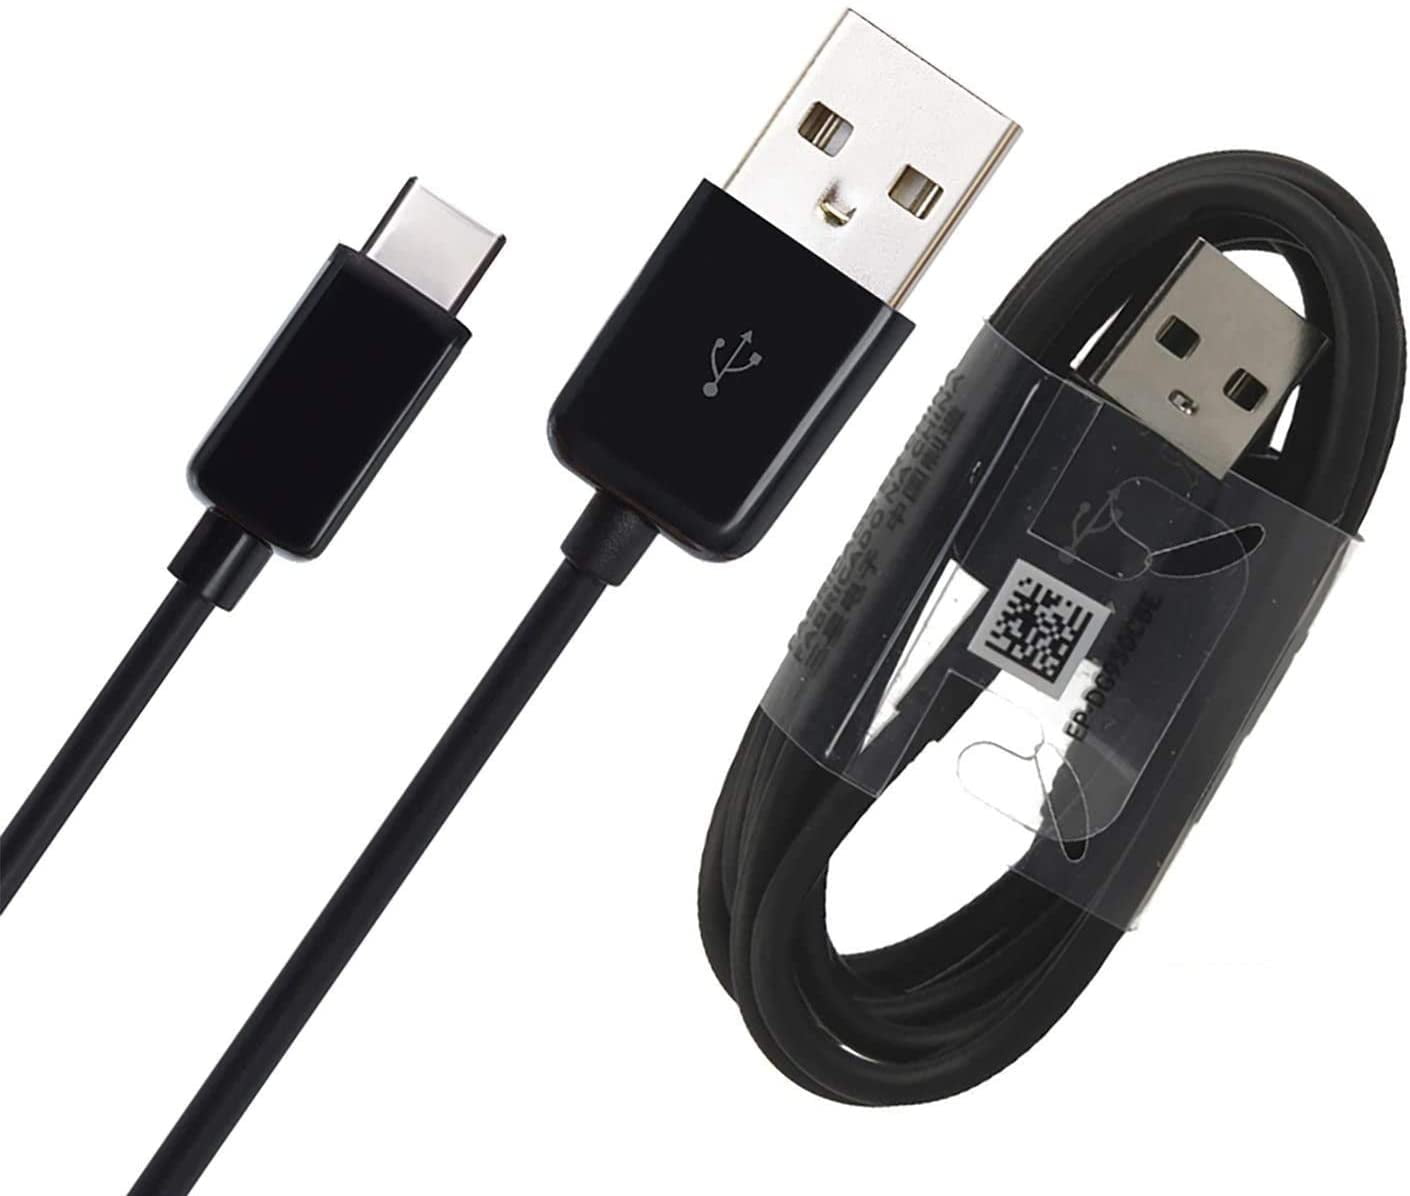 Kilimanjaro enkemand varemærke 2 PACK USB-C Charging Transfer Cable for Huawei P Smart S (Black / 3.3Ft) -  Walmart.com